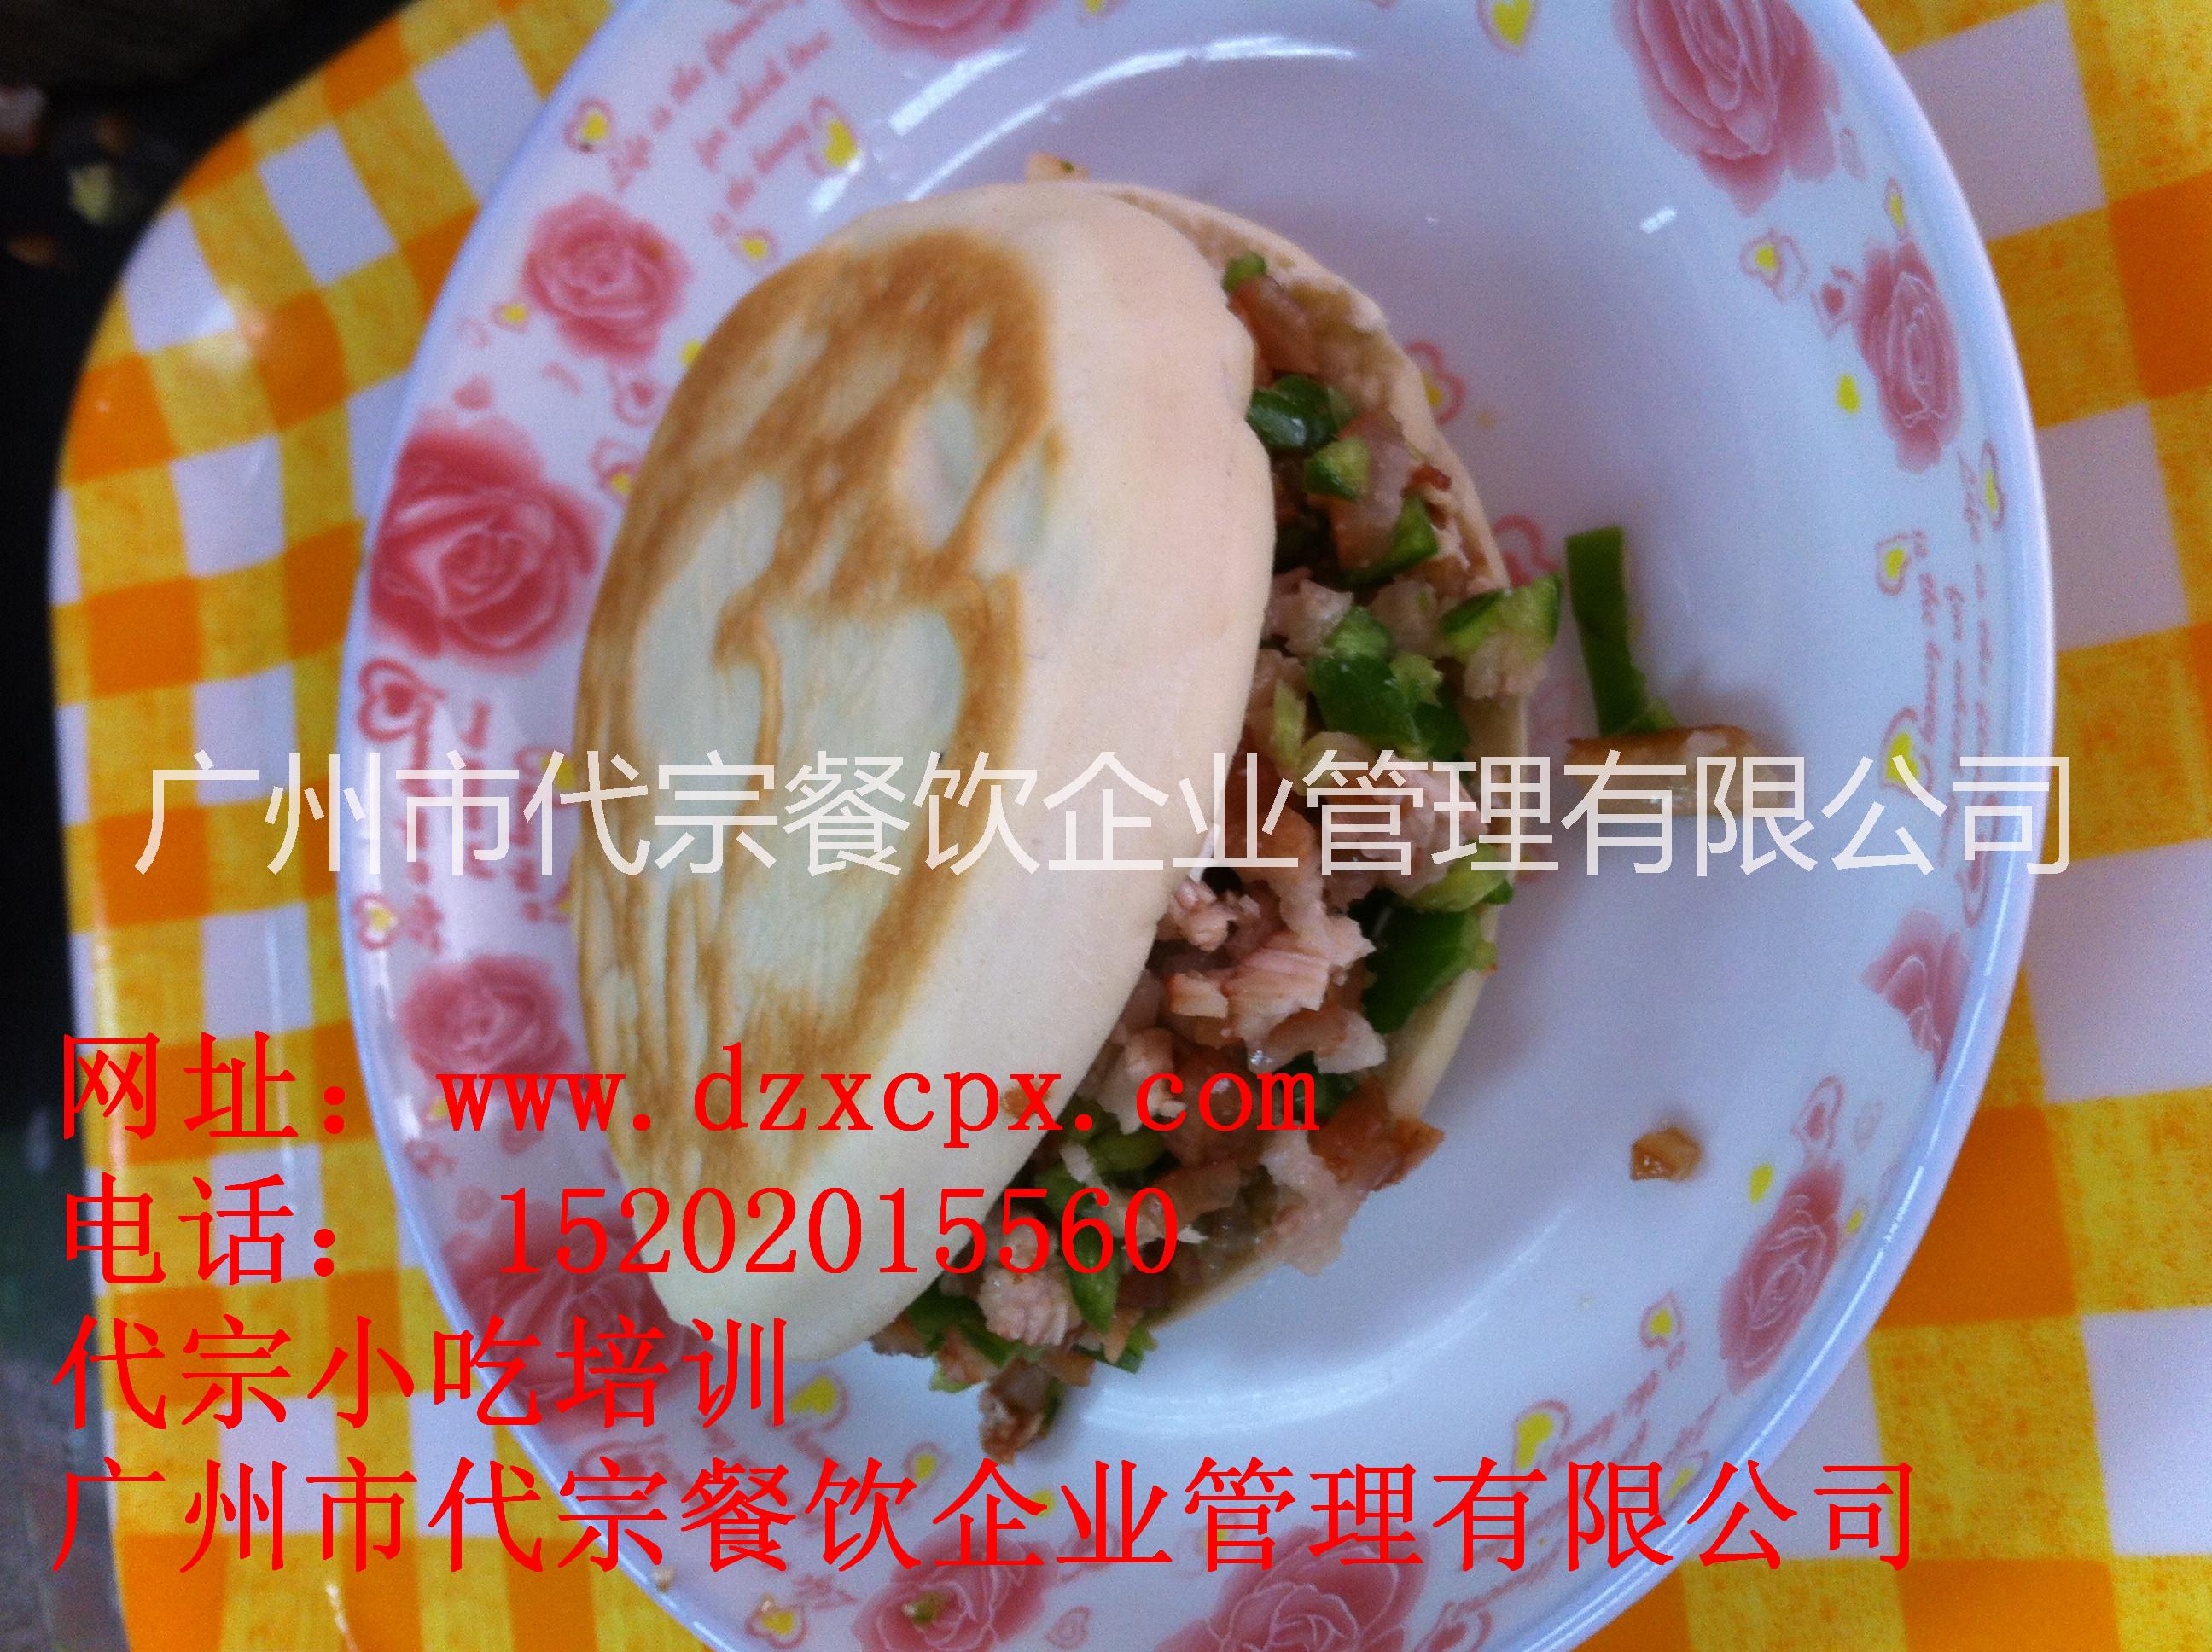 供应在广州学到正宗的陕西肉夹馍技术，广州哪里有肉夹馍培训班，肉夹馍培训学习